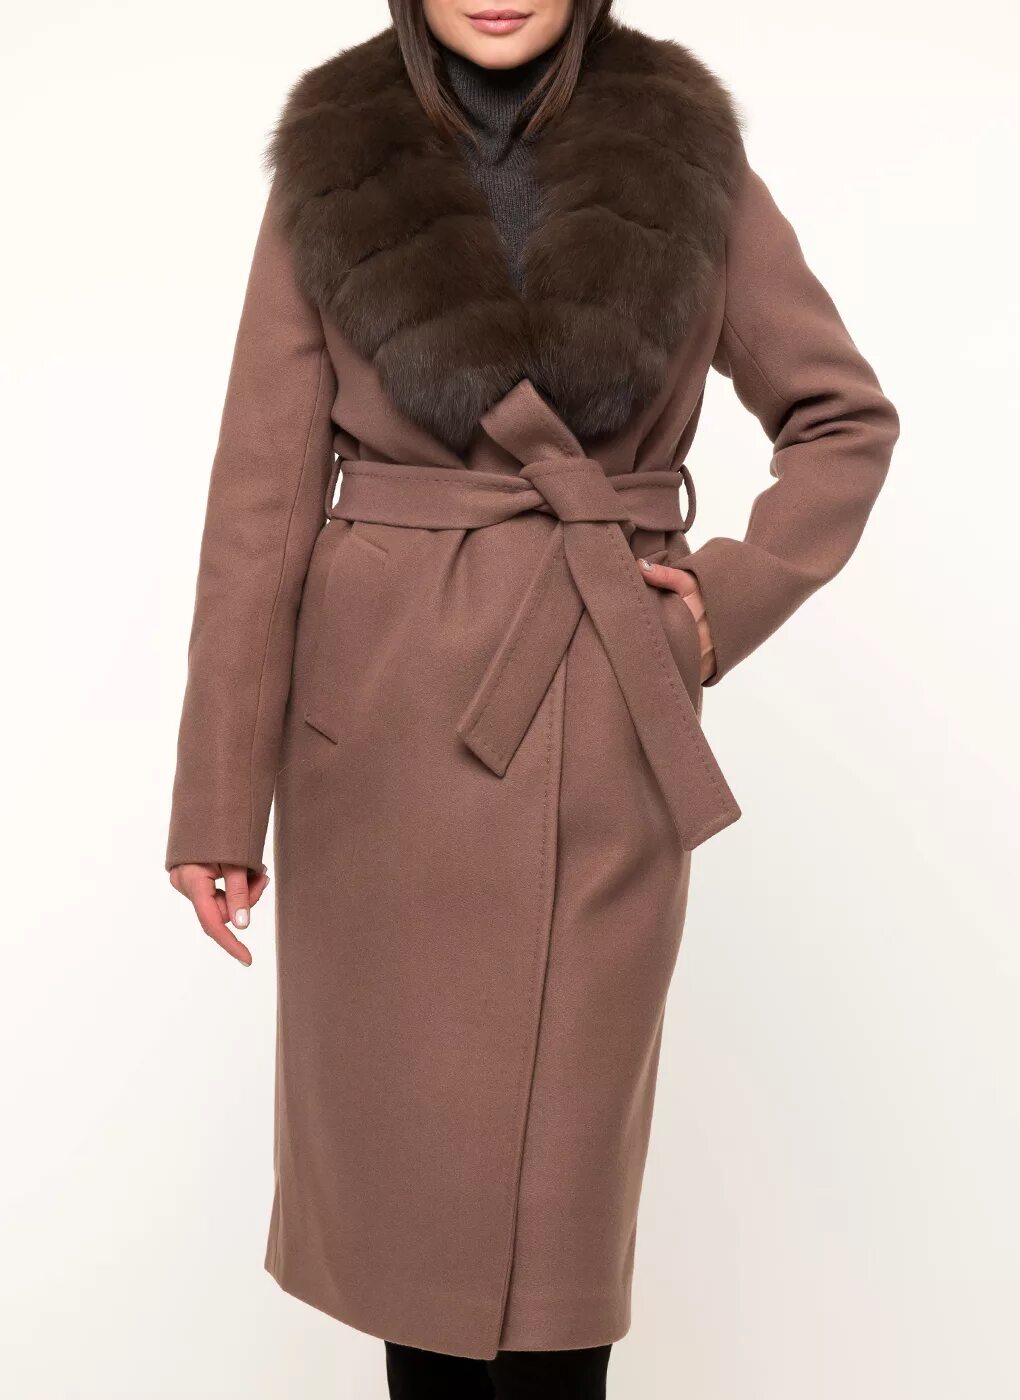 Пальто Каляев коричневое. Zarya mody пальто. Пальто зимнее женское Заря моды. Пальто зимнее полушерстяное 88, Заря моды.